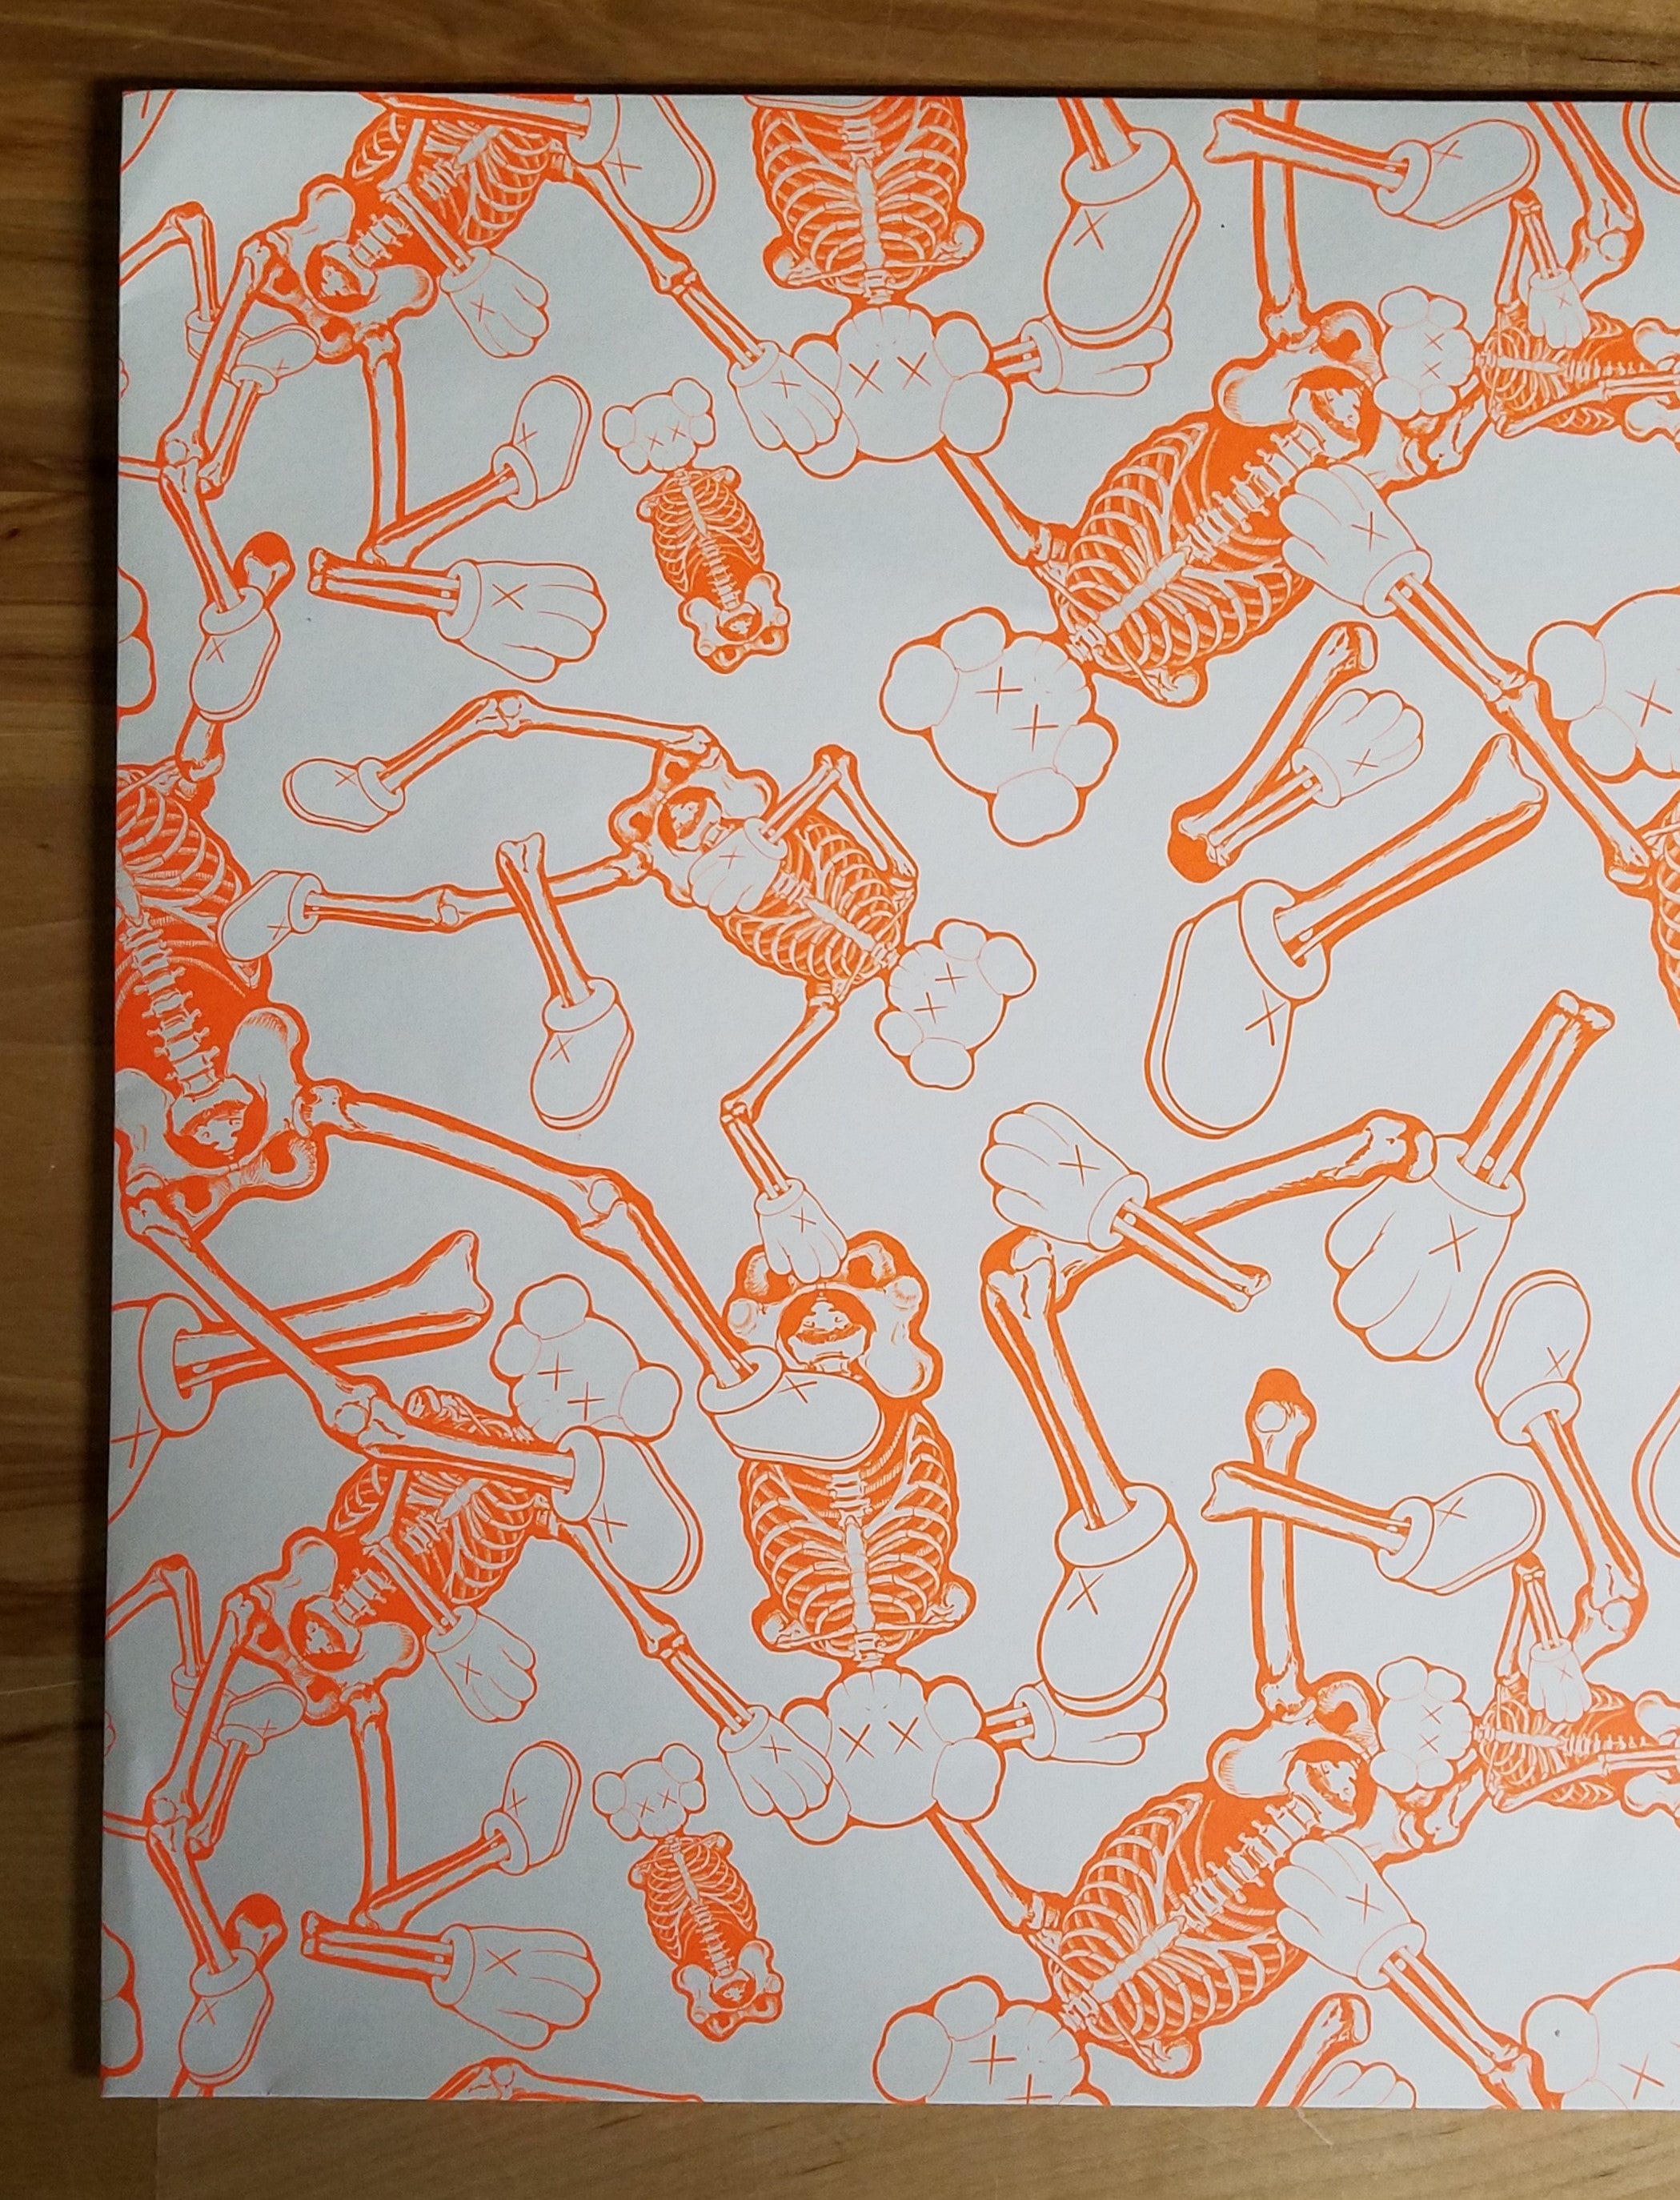 KAWS Skeleton Cardboard Wall Hanging - Orange